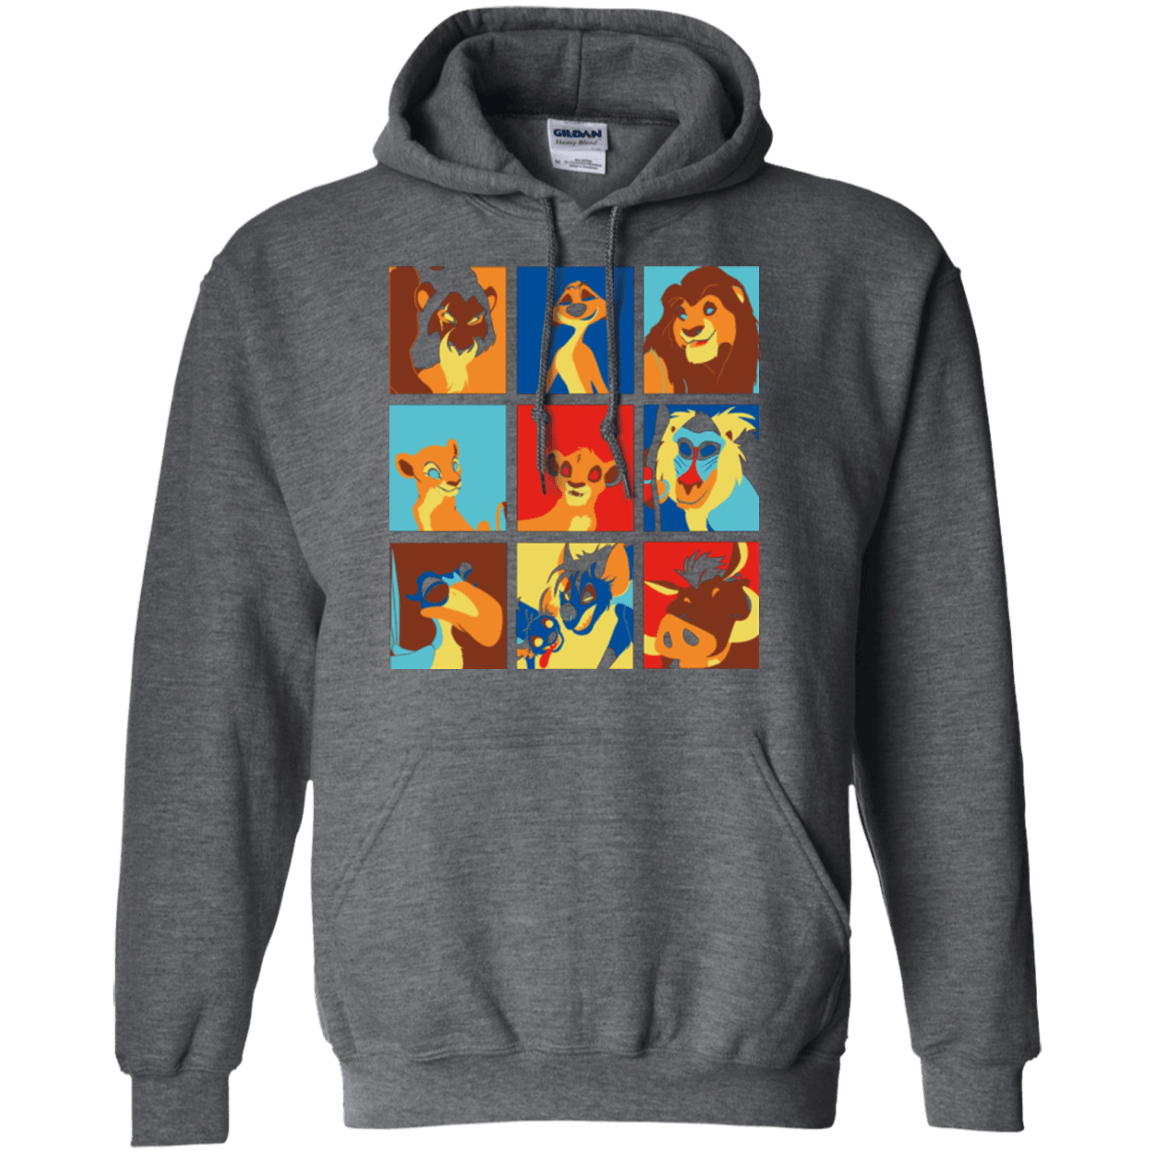 Sweatshirts Dark Heather / Small Lion Pop Pullover Hoodie